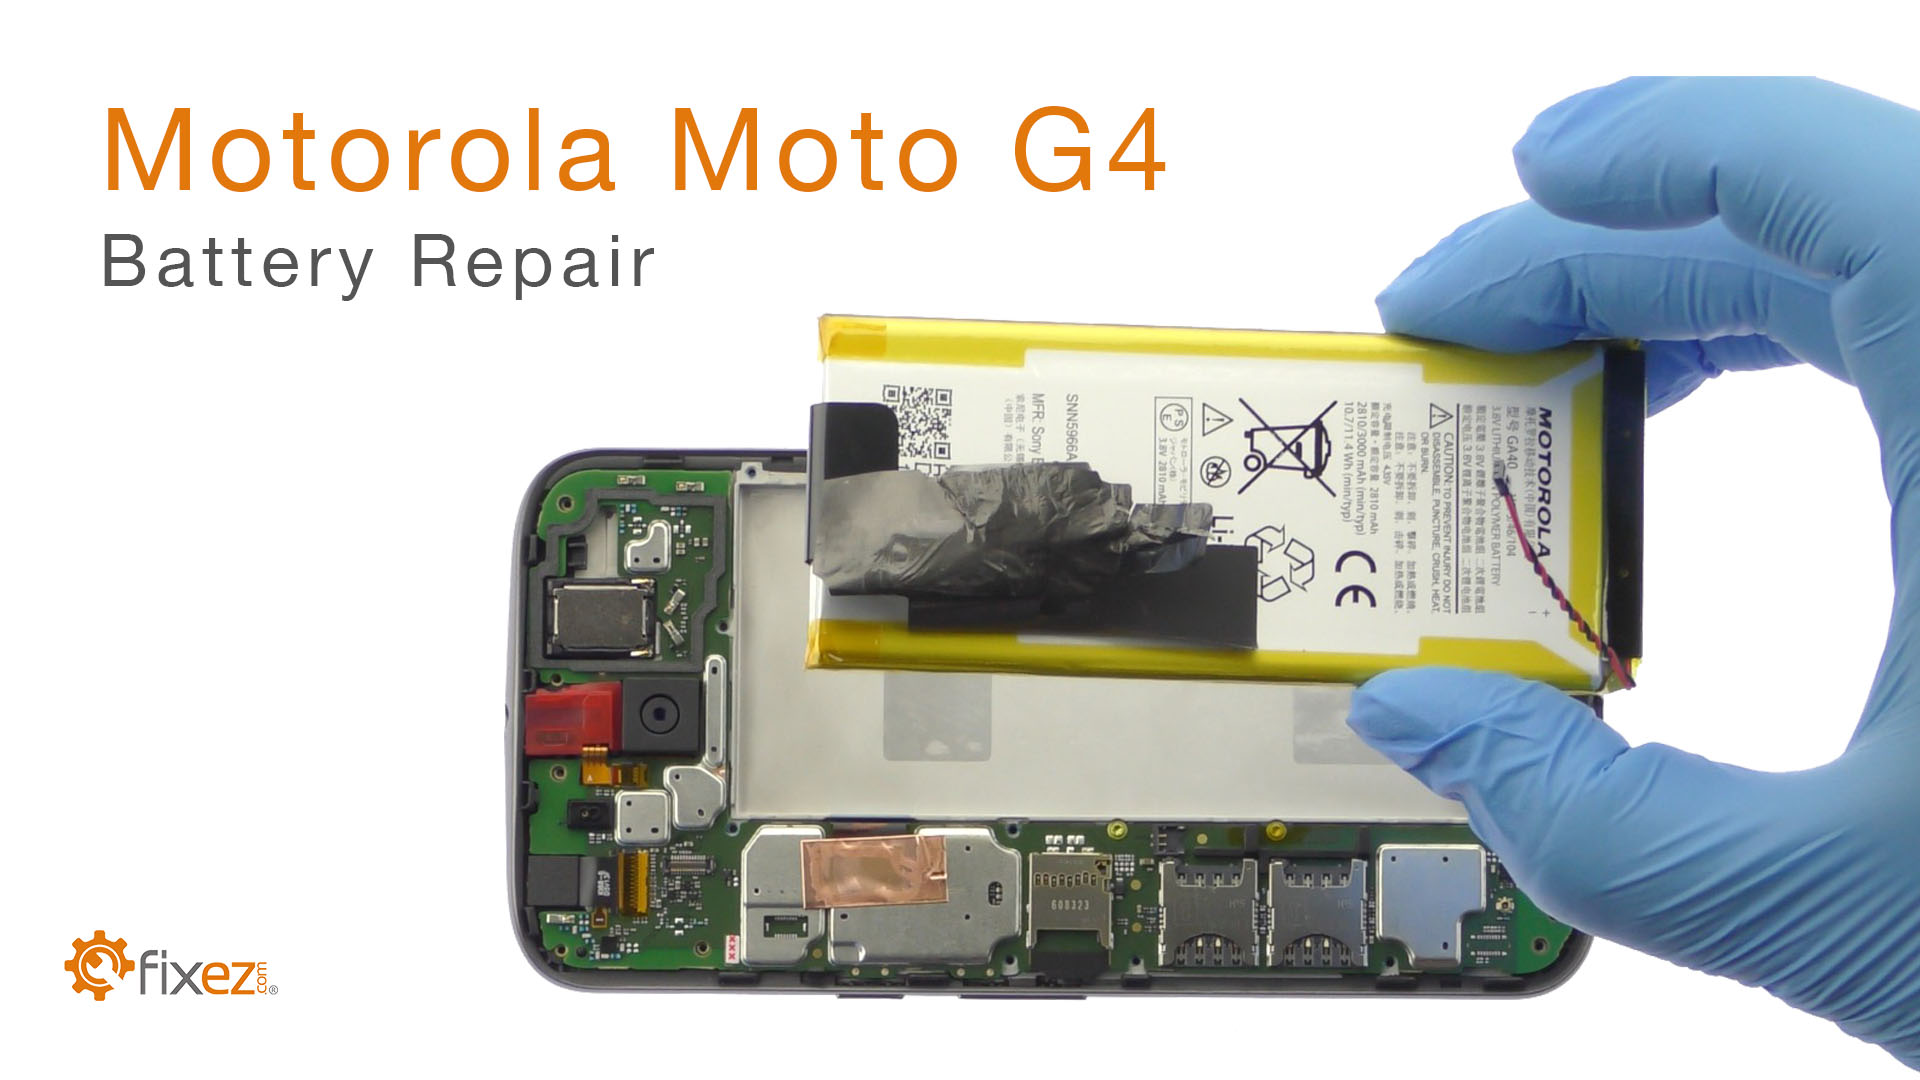 Motorola Moto G4 Battery Repair